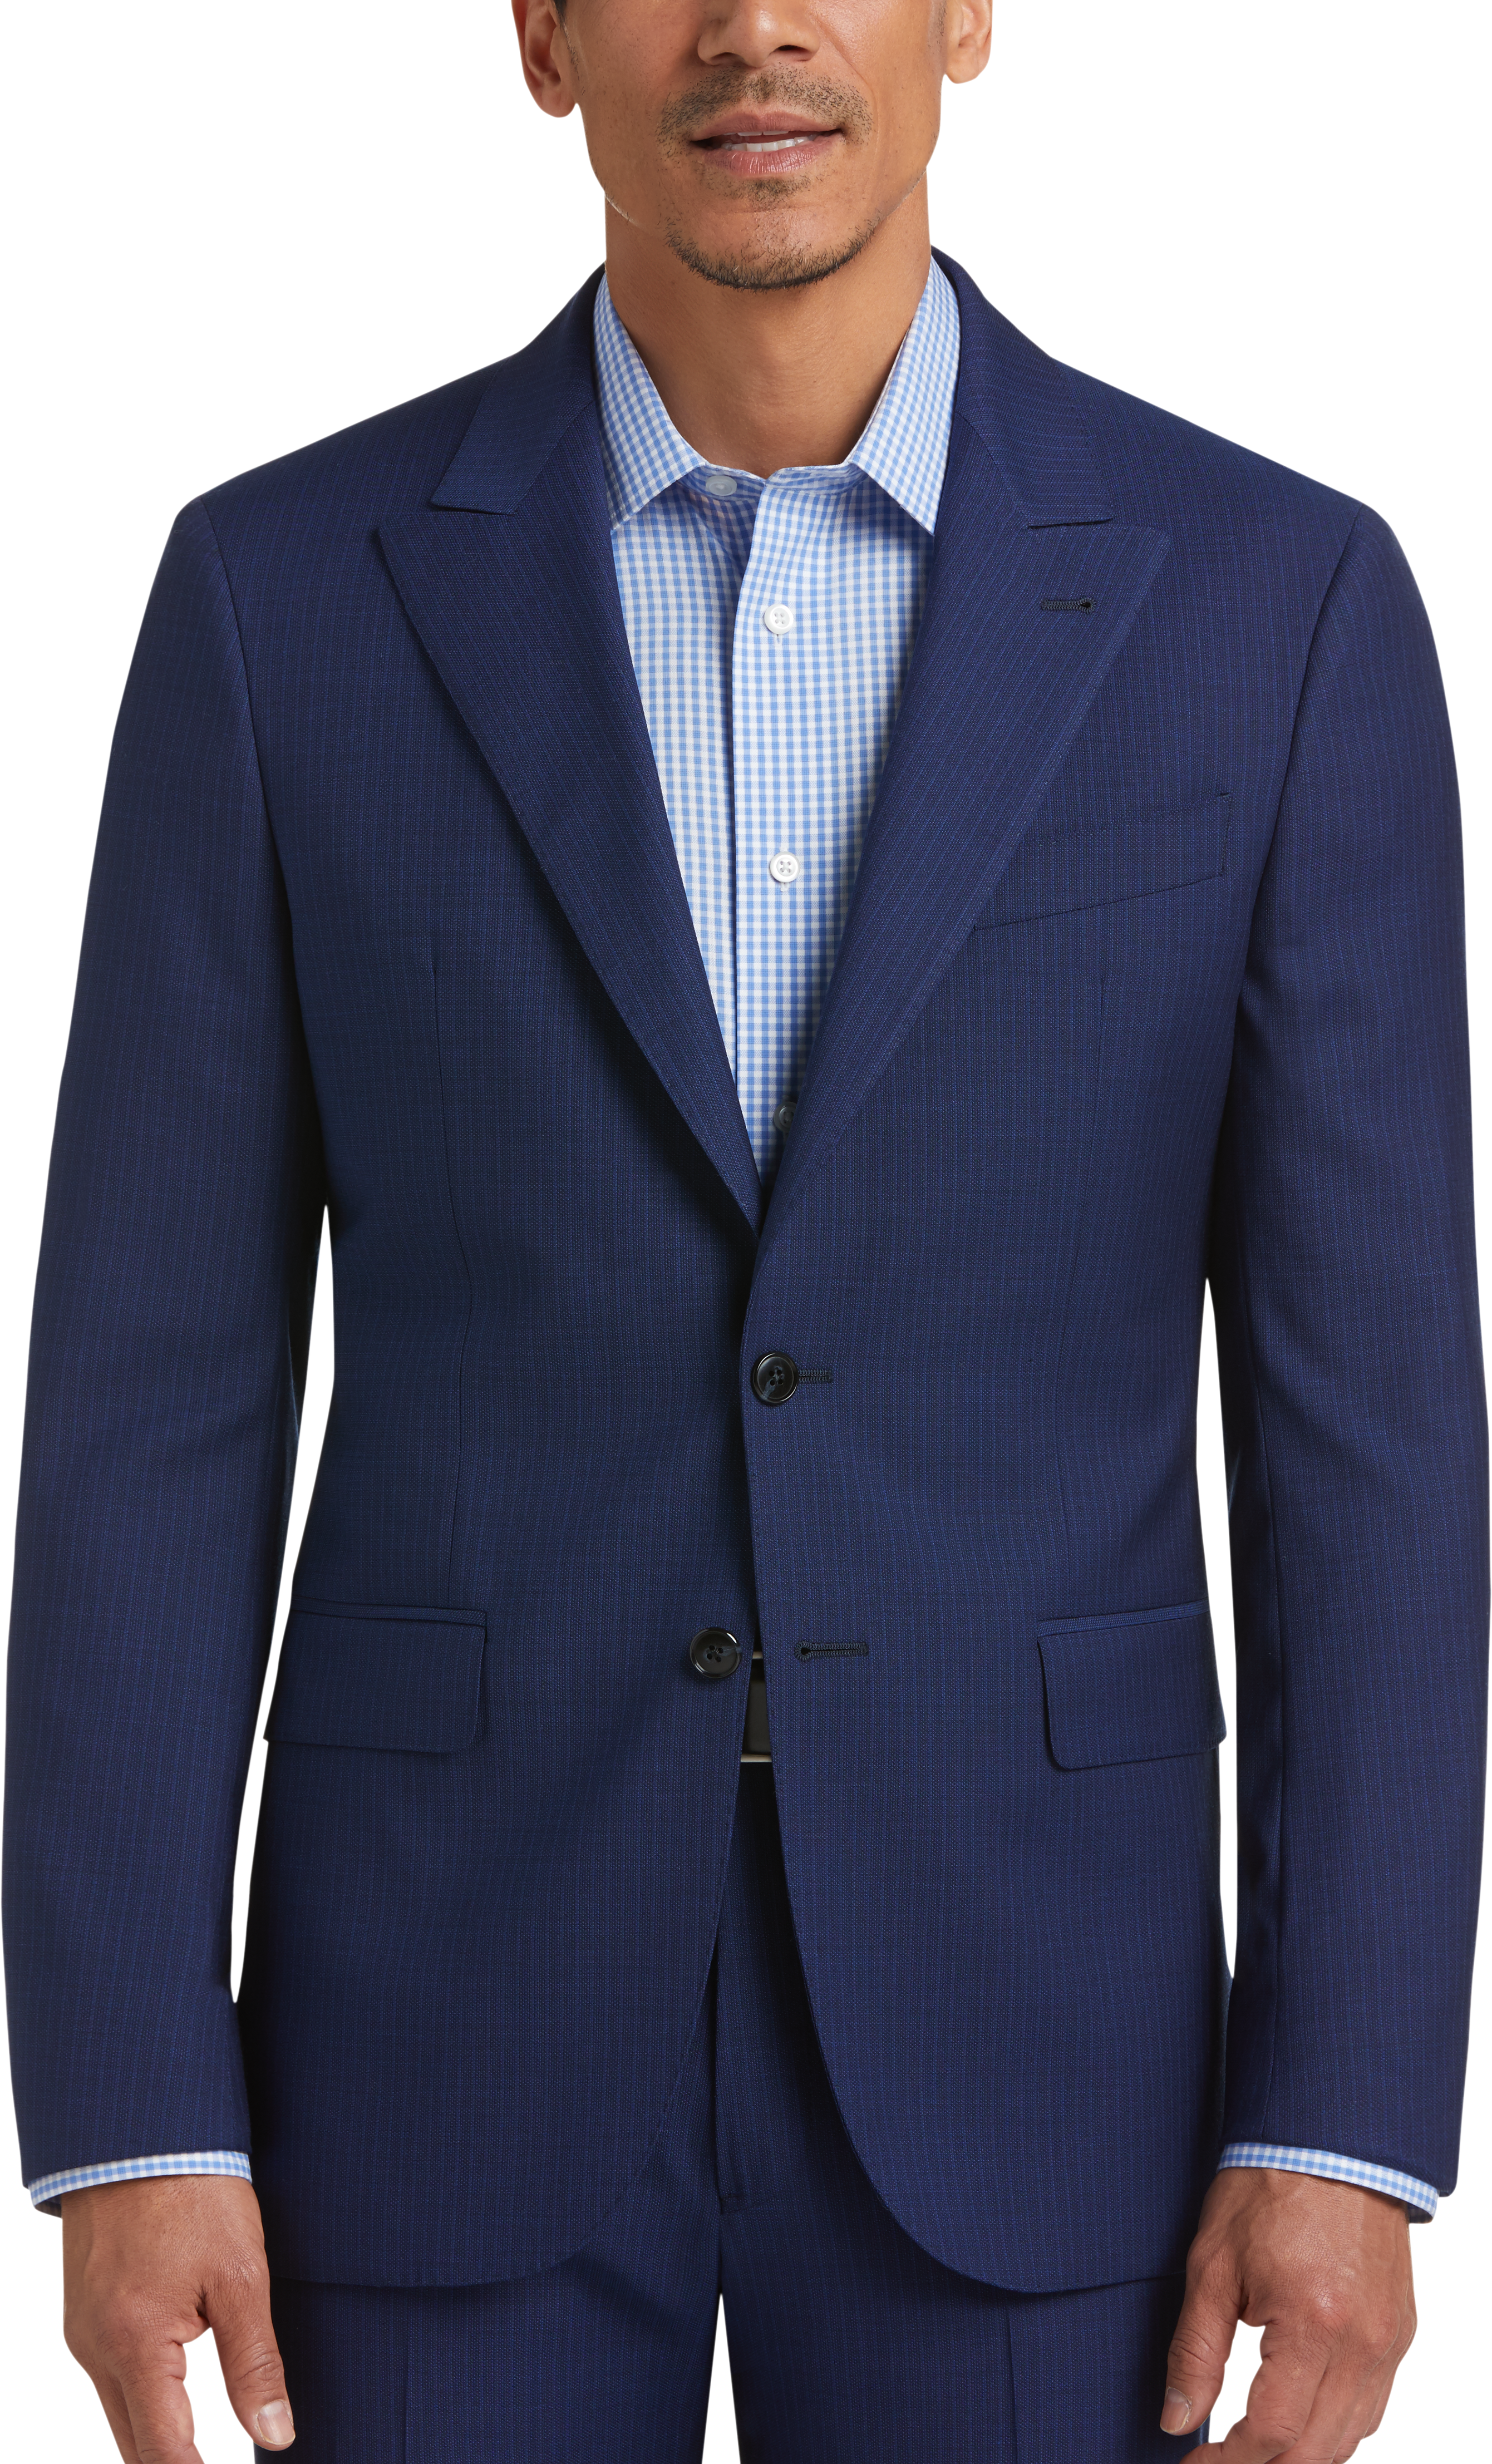 Joseph Abboud Blue Stripe Slim Fit Suit - Men's The New Blue Suit | Men ...